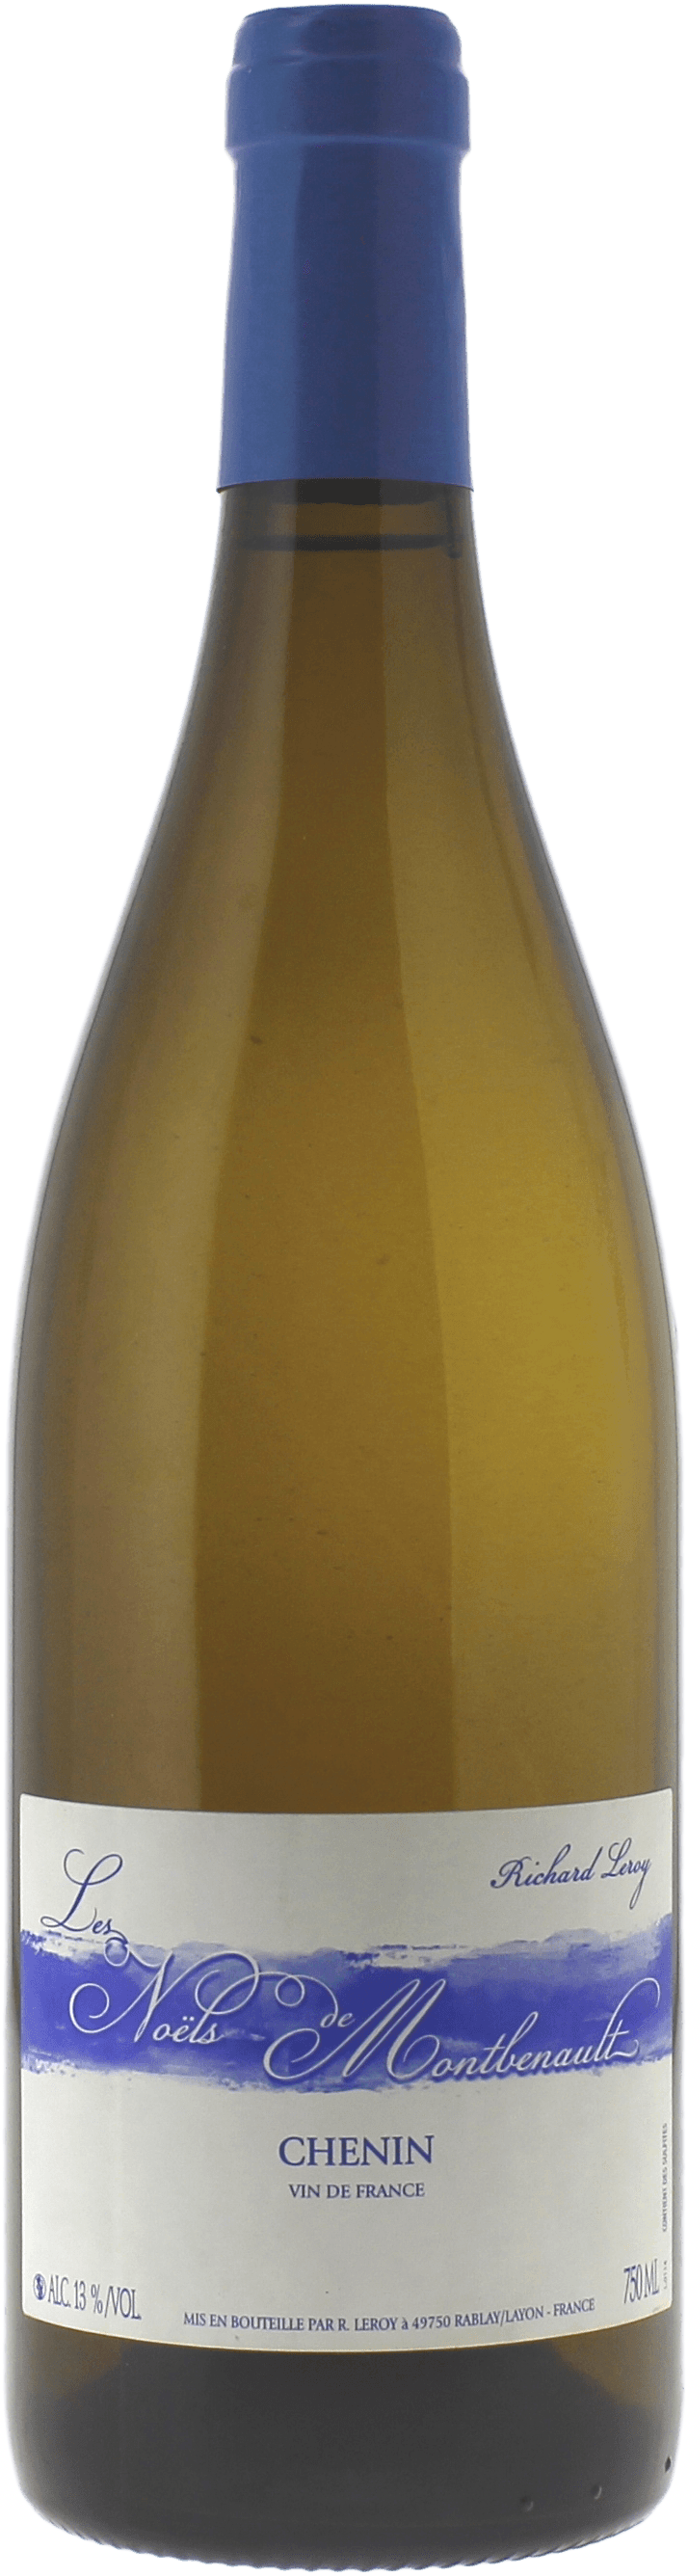 Les nols de montbenault richard leroy 2015  Vin de France, Valle de la Loire